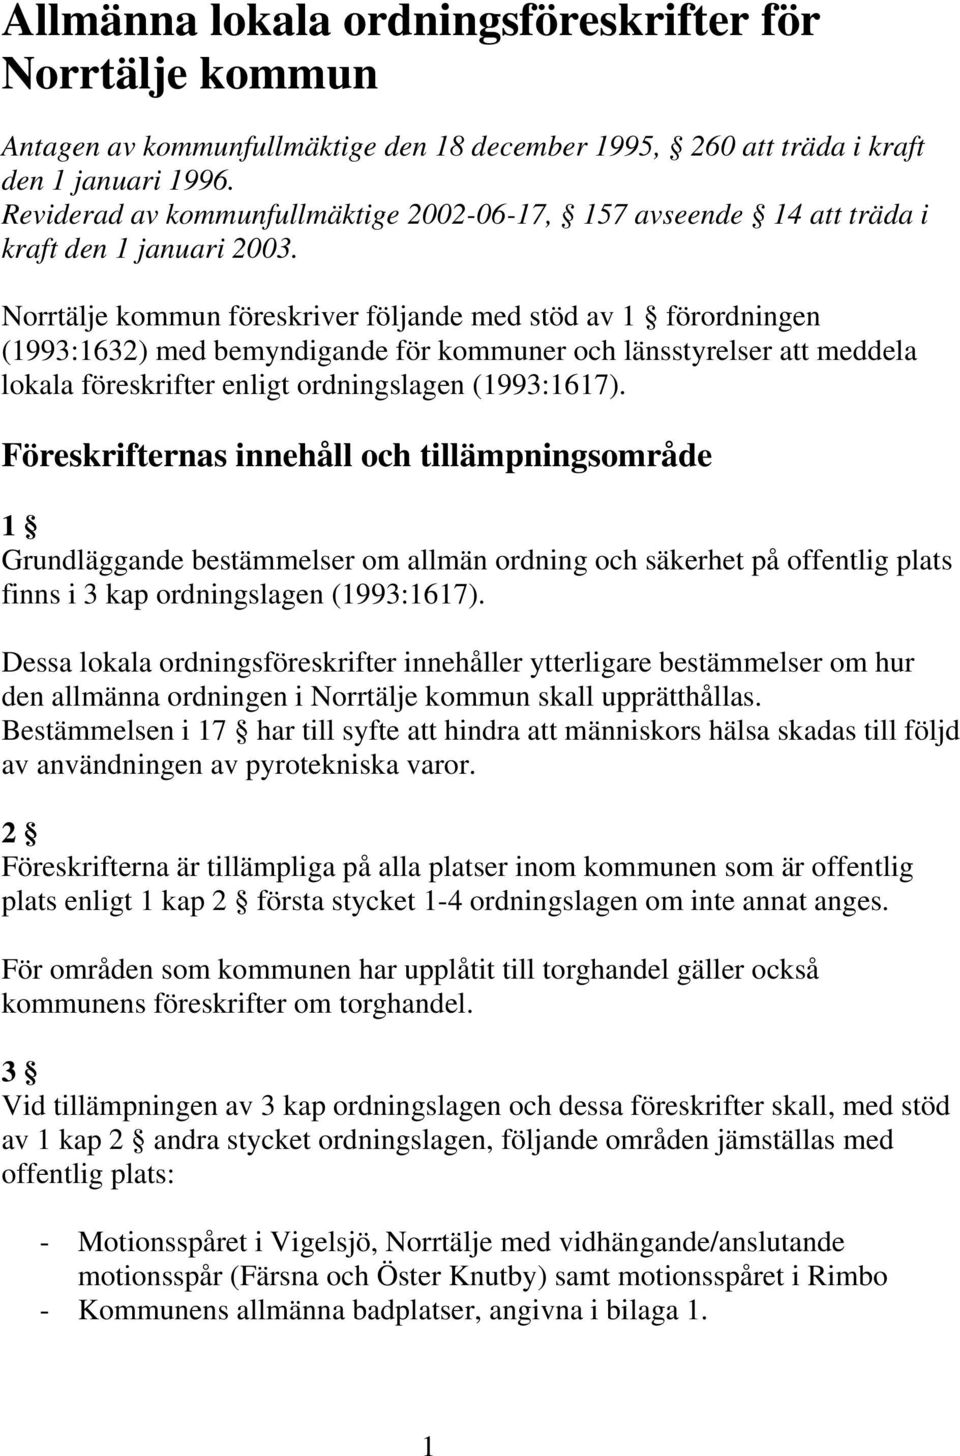 Norrtälje kommun föreskriver följande med stöd av 1 förordningen (1993:1632) med bemyndigande för kommuner och länsstyrelser att meddela lokala föreskrifter enligt ordningslagen (1993:1617).